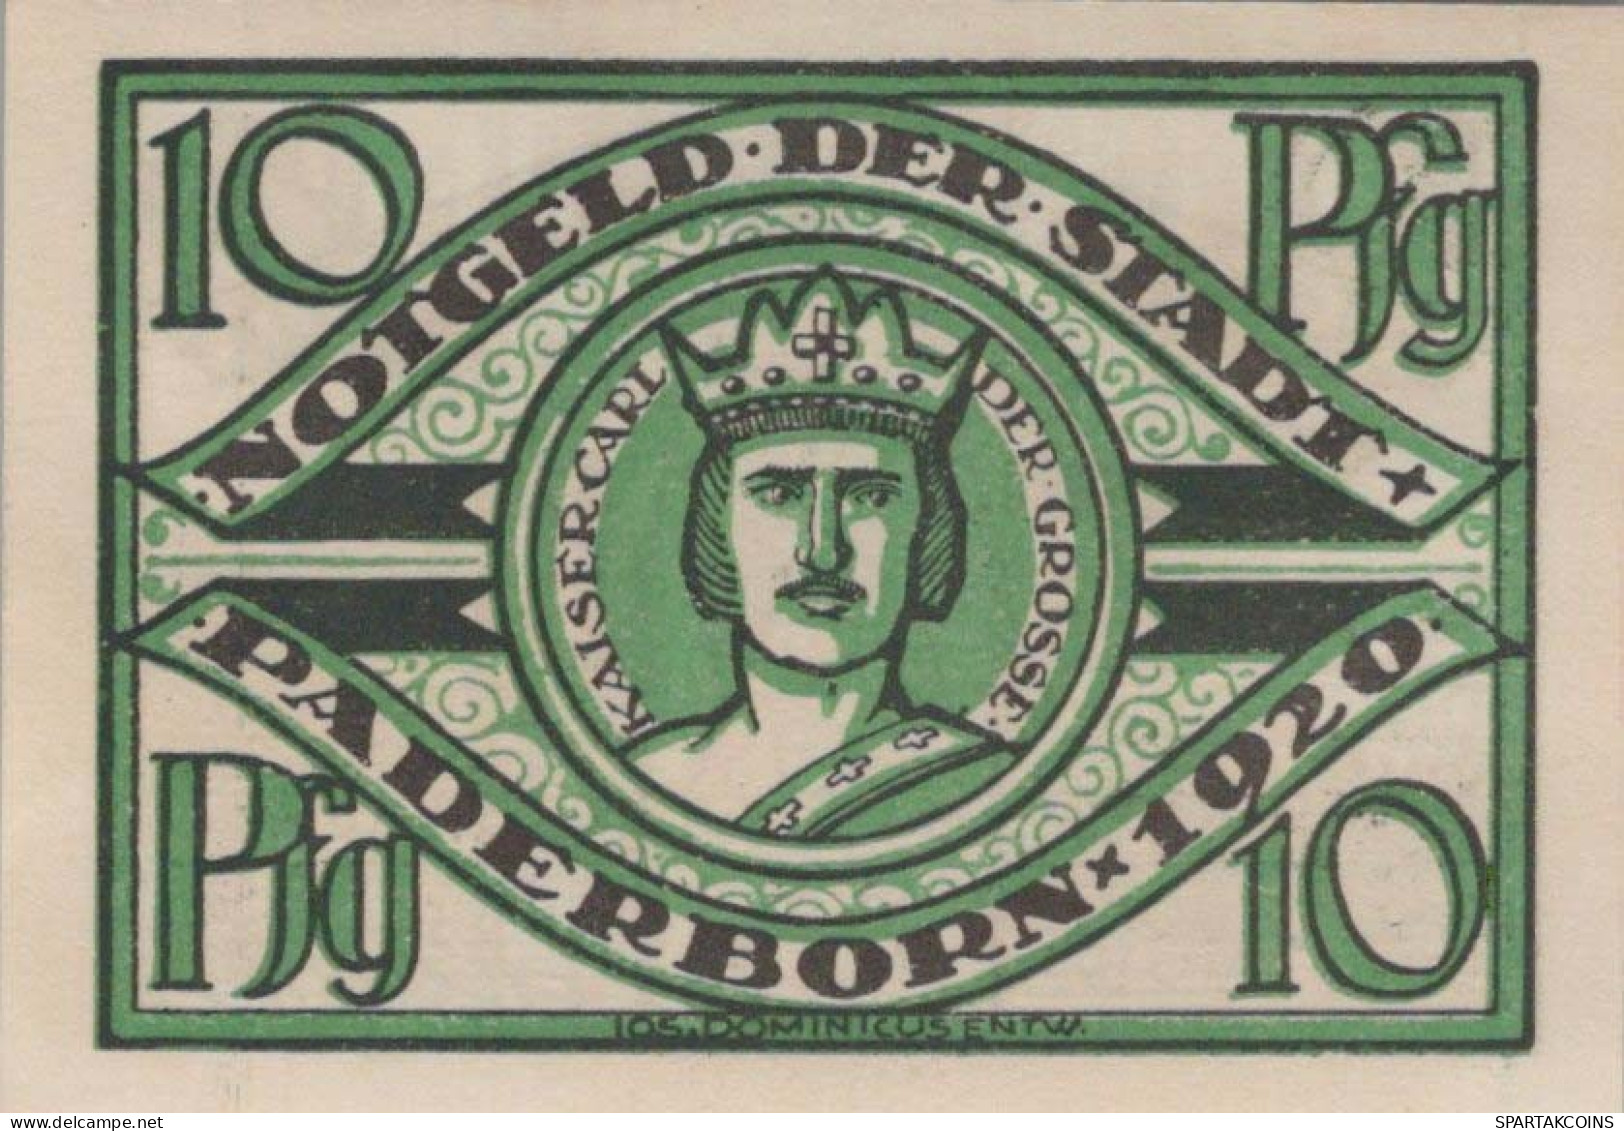 10 PFENNIG 1920 Stadt PADERBORN Westphalia UNC DEUTSCHLAND Notgeld #PI135 - [11] Local Banknote Issues